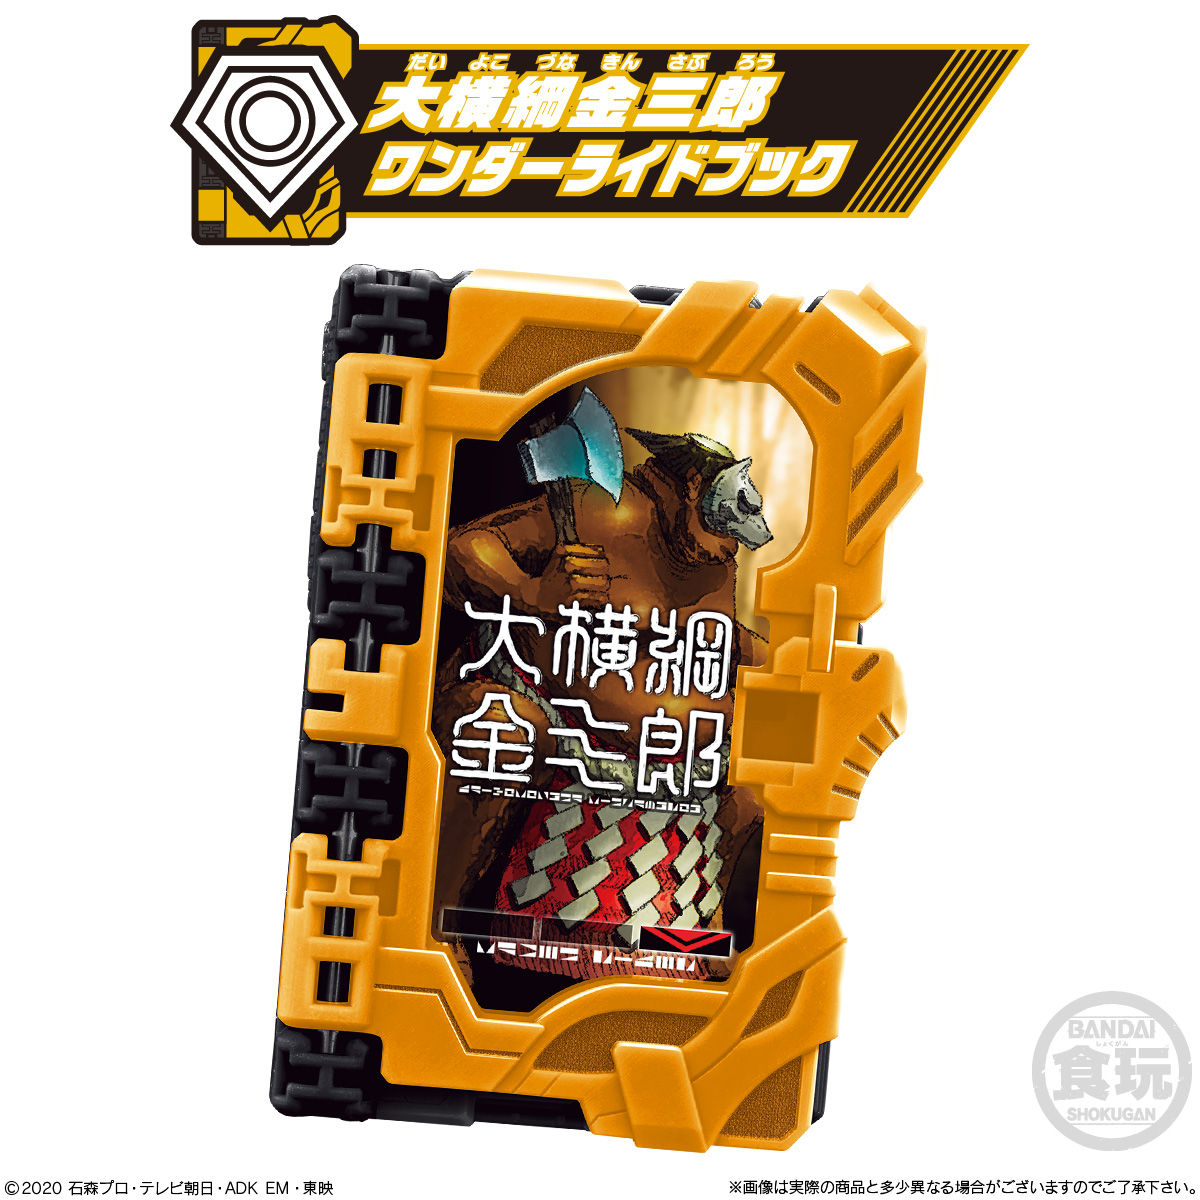 【食玩】仮面ライダーセイバー『コレクタブルワンダーライドブック SG08』8個入りBOX-004